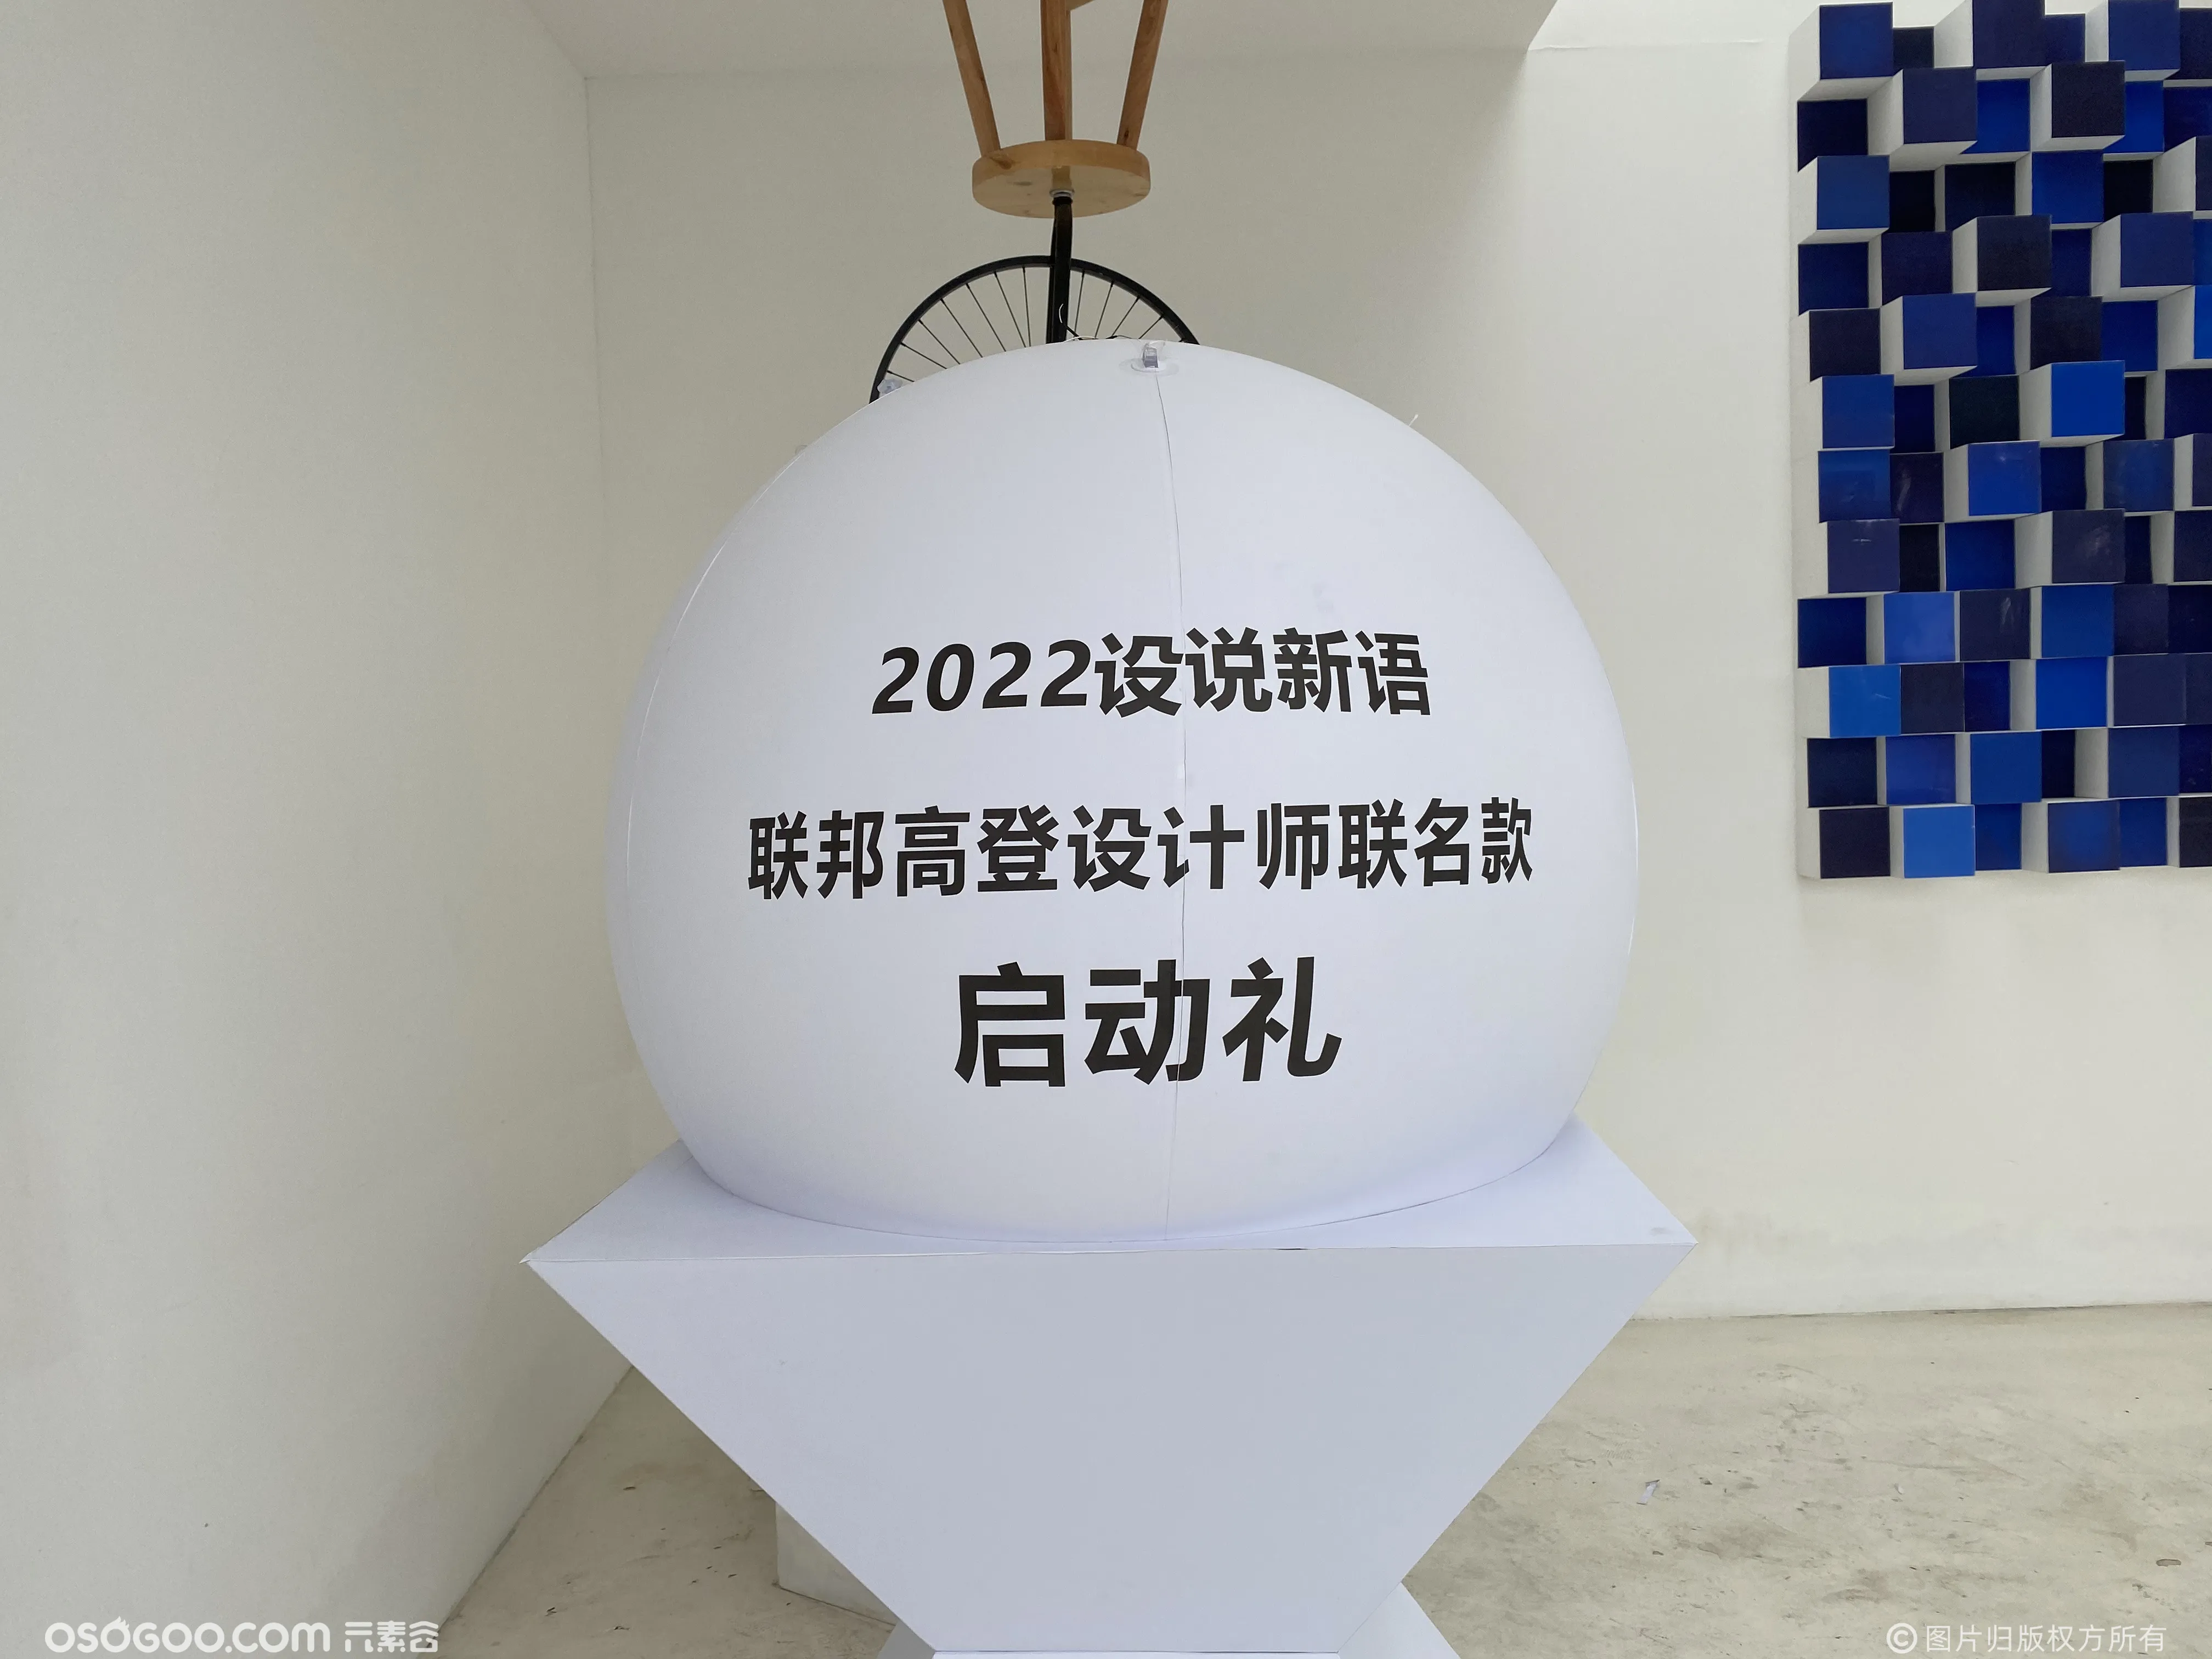 2022设说新语 科技飞球启动仪式